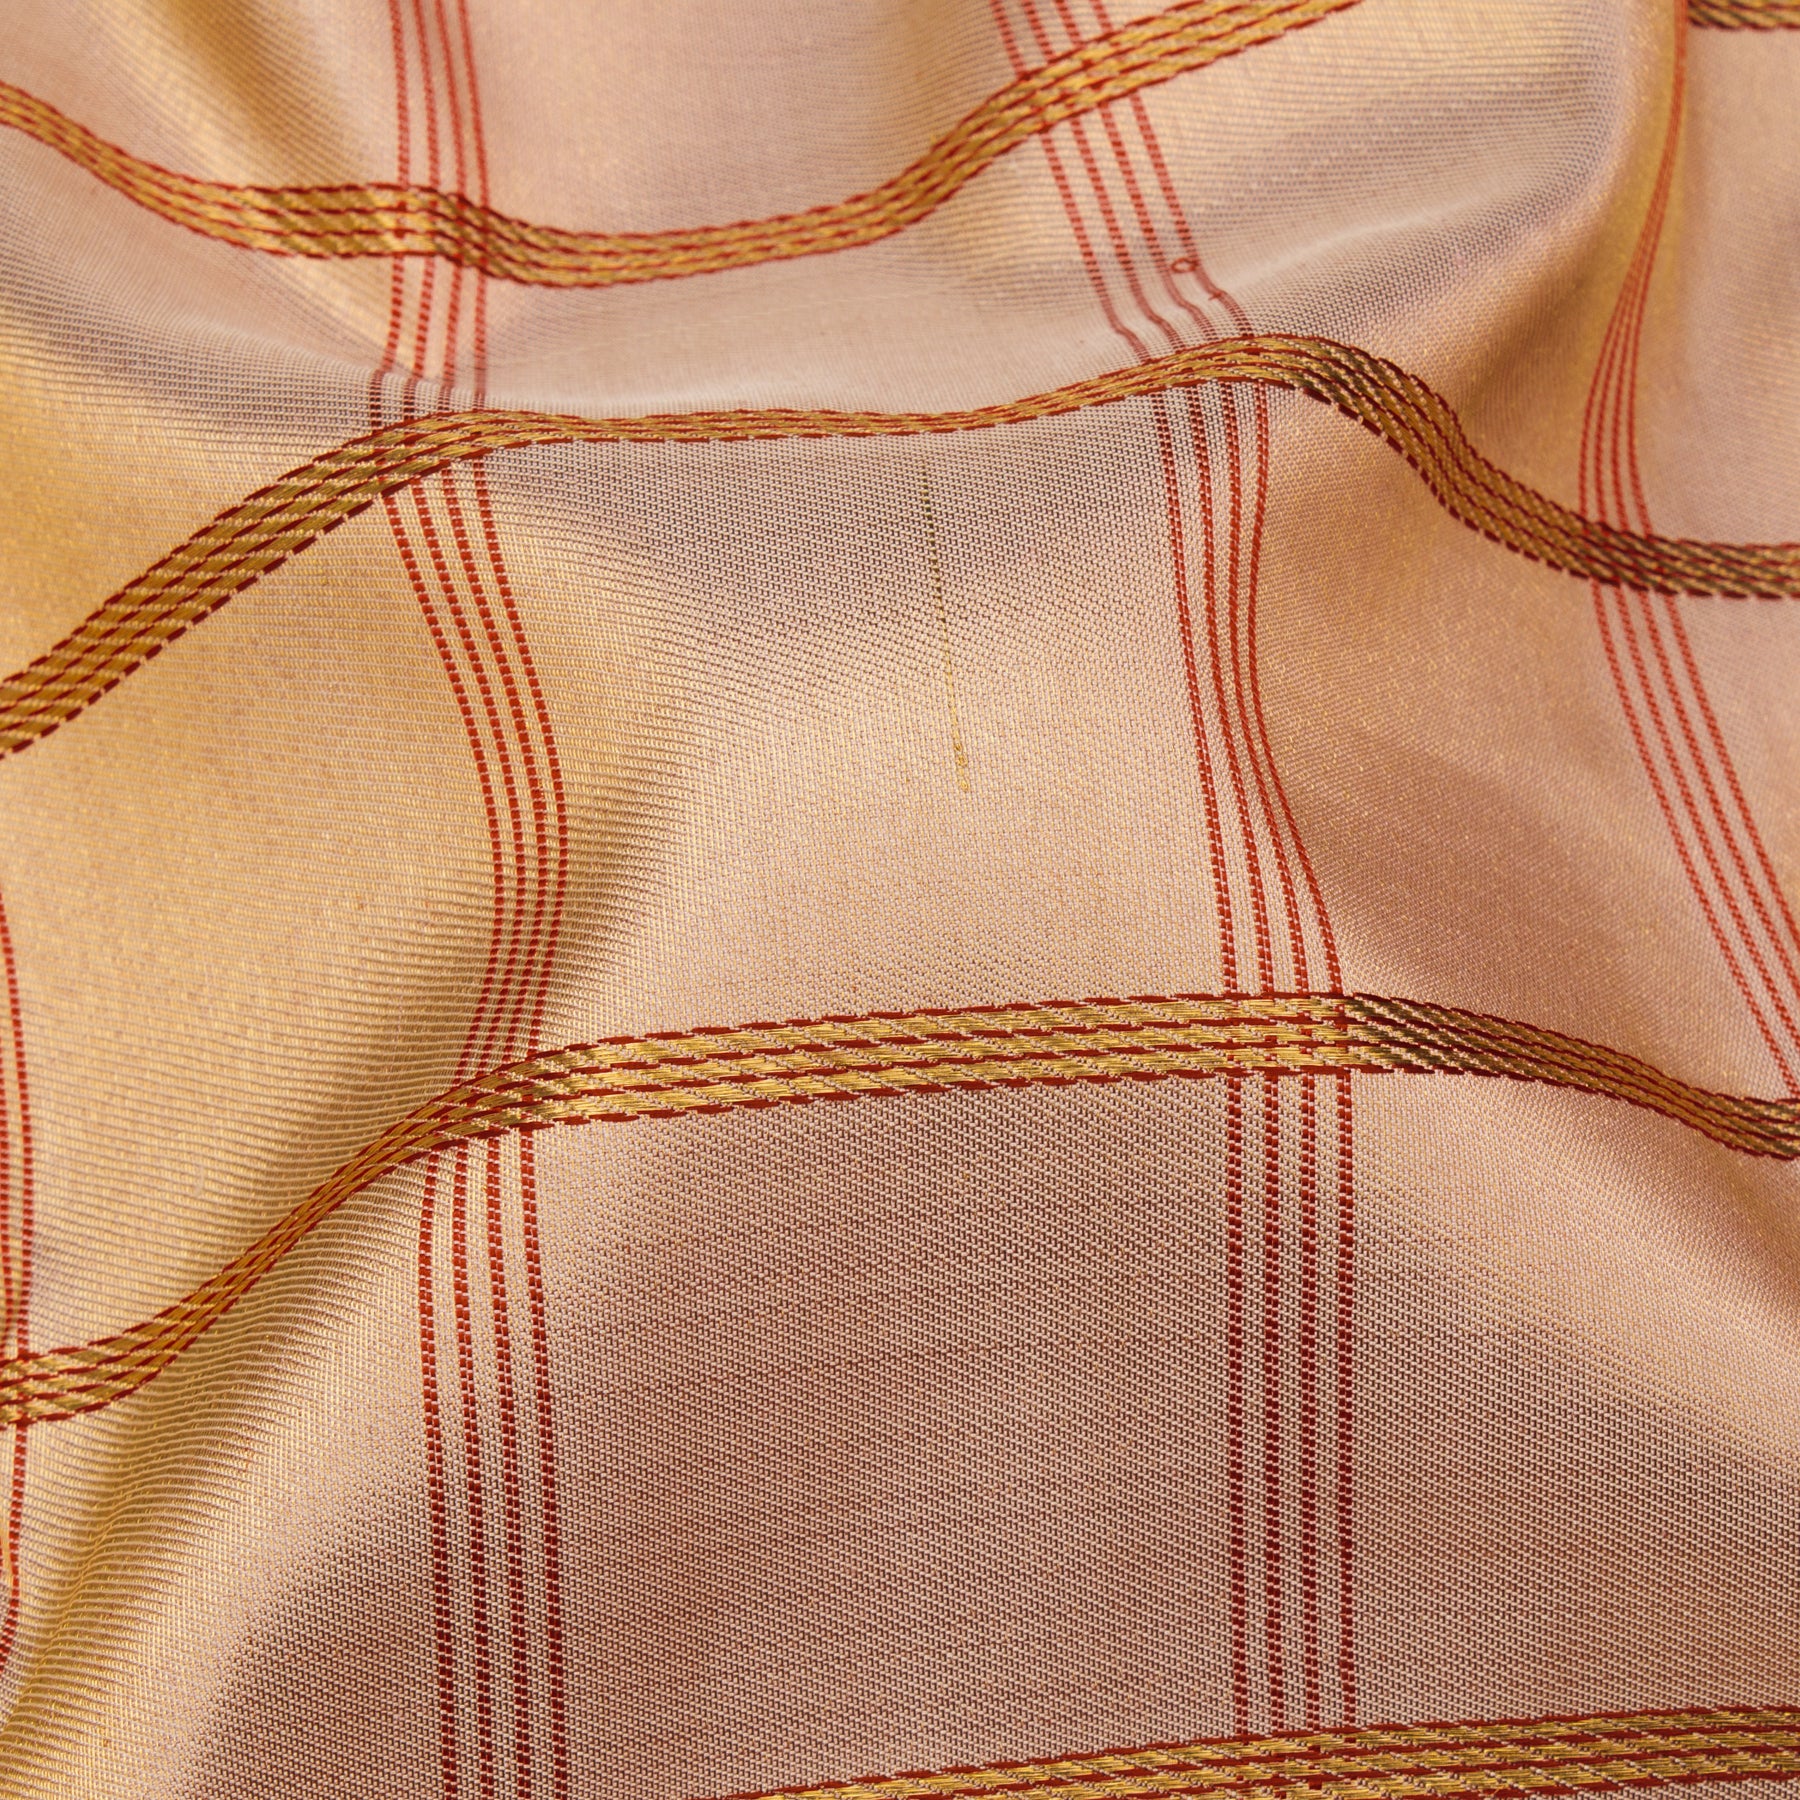 Kanakavalli Kanjivaram Silk Sari 23-040-HS001-14124 - Fabric View